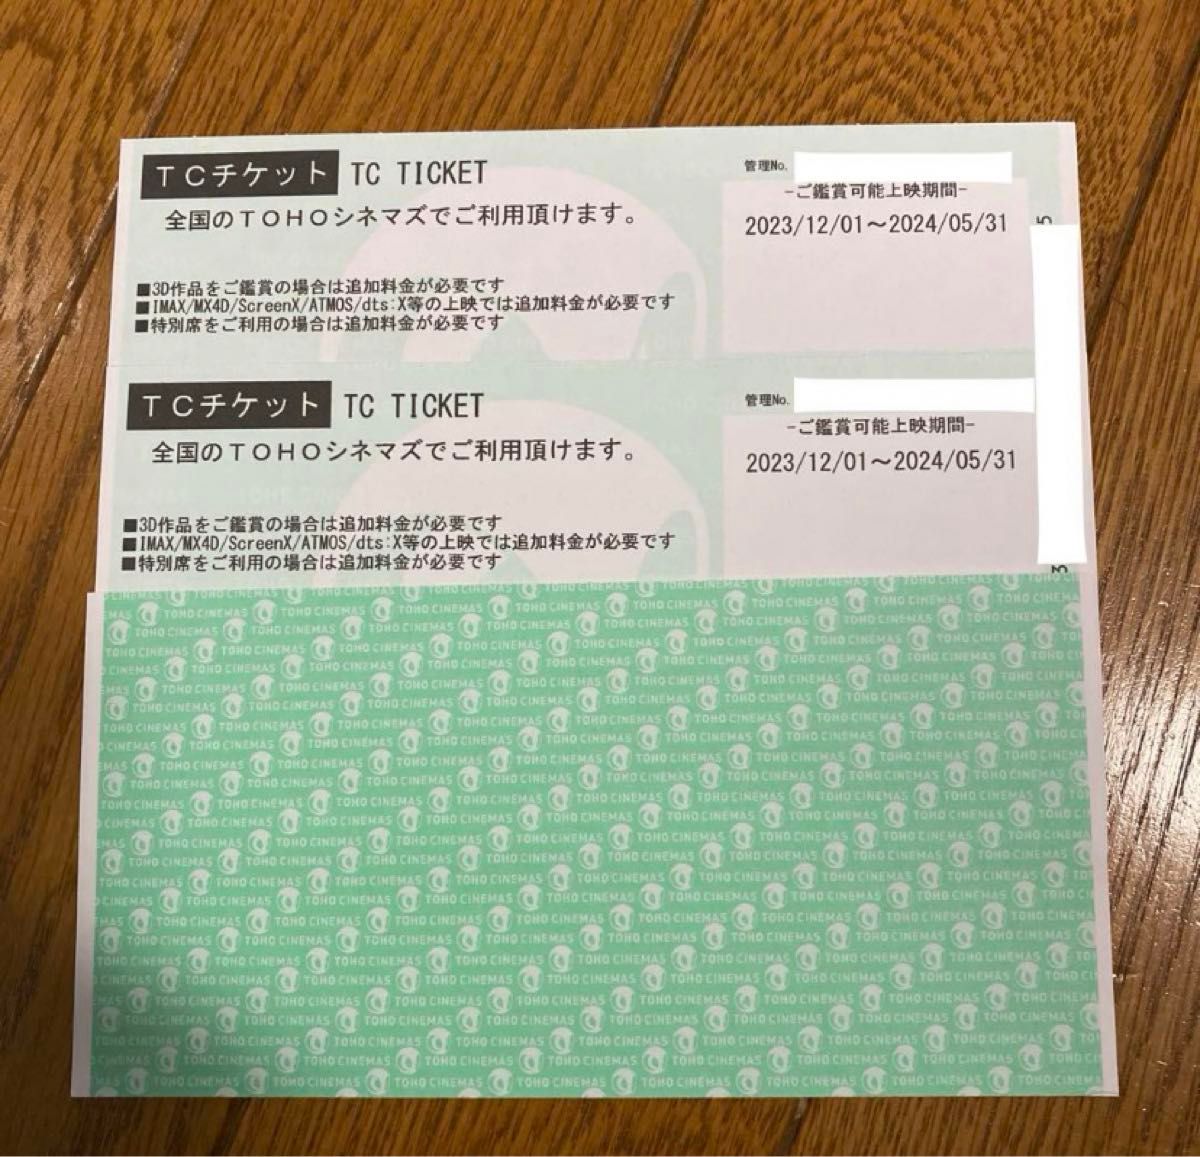 TOHOシネマズ 映画チケット2枚 鑑賞券